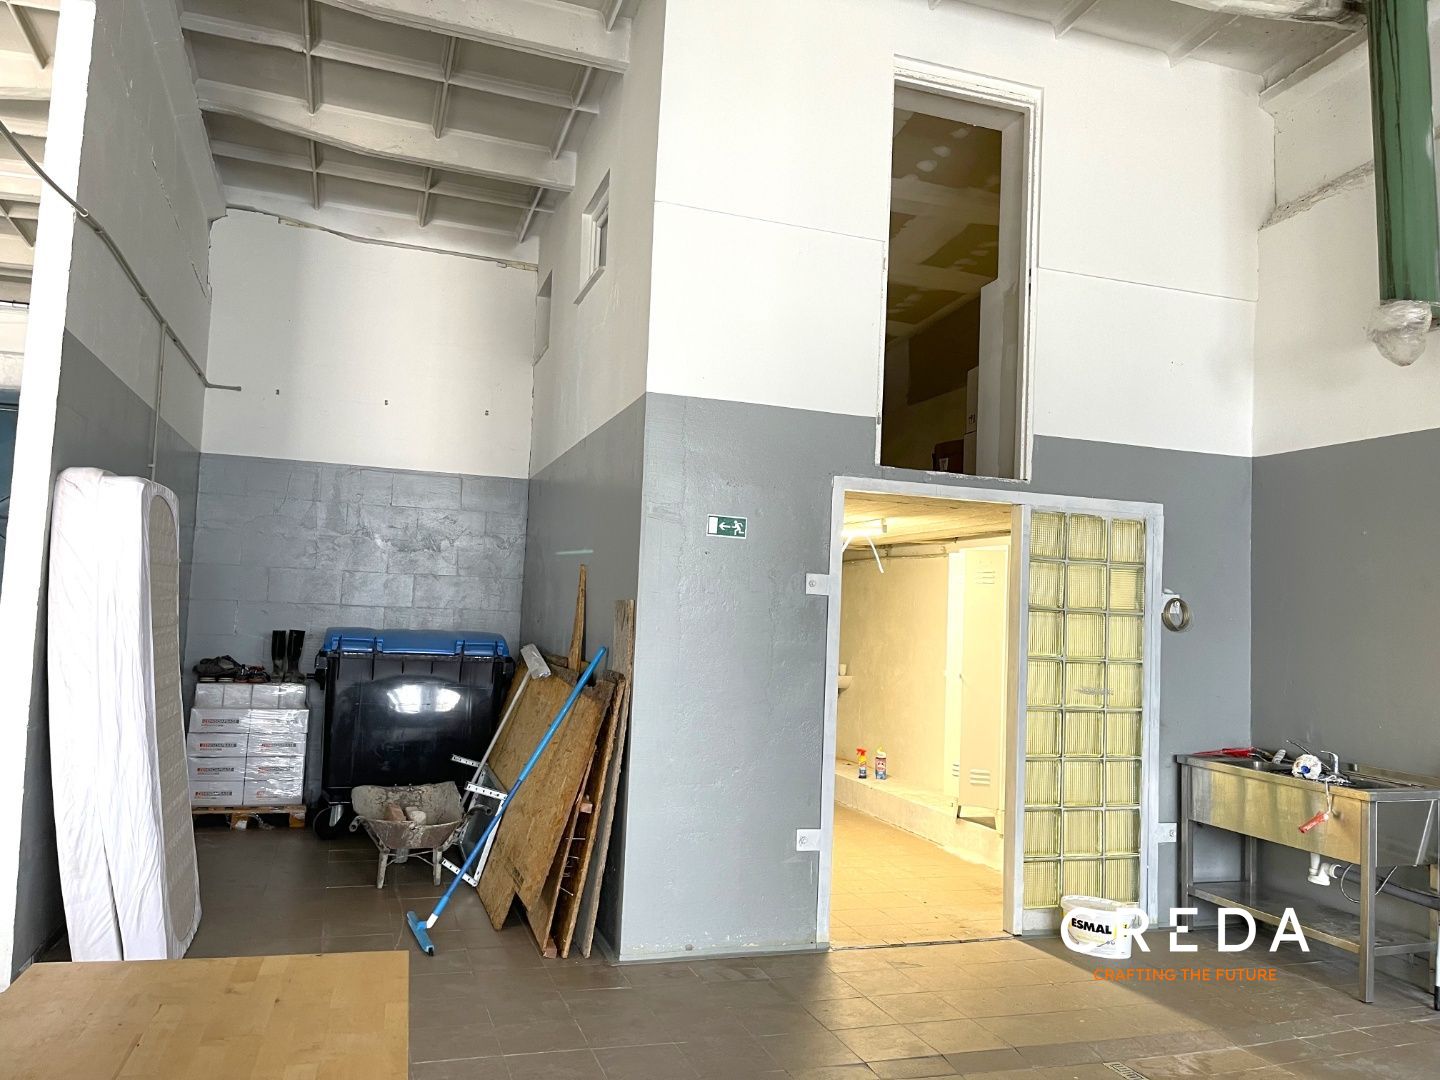 CREDA | prenájom komerčného priestoru 330 m2, Nitra